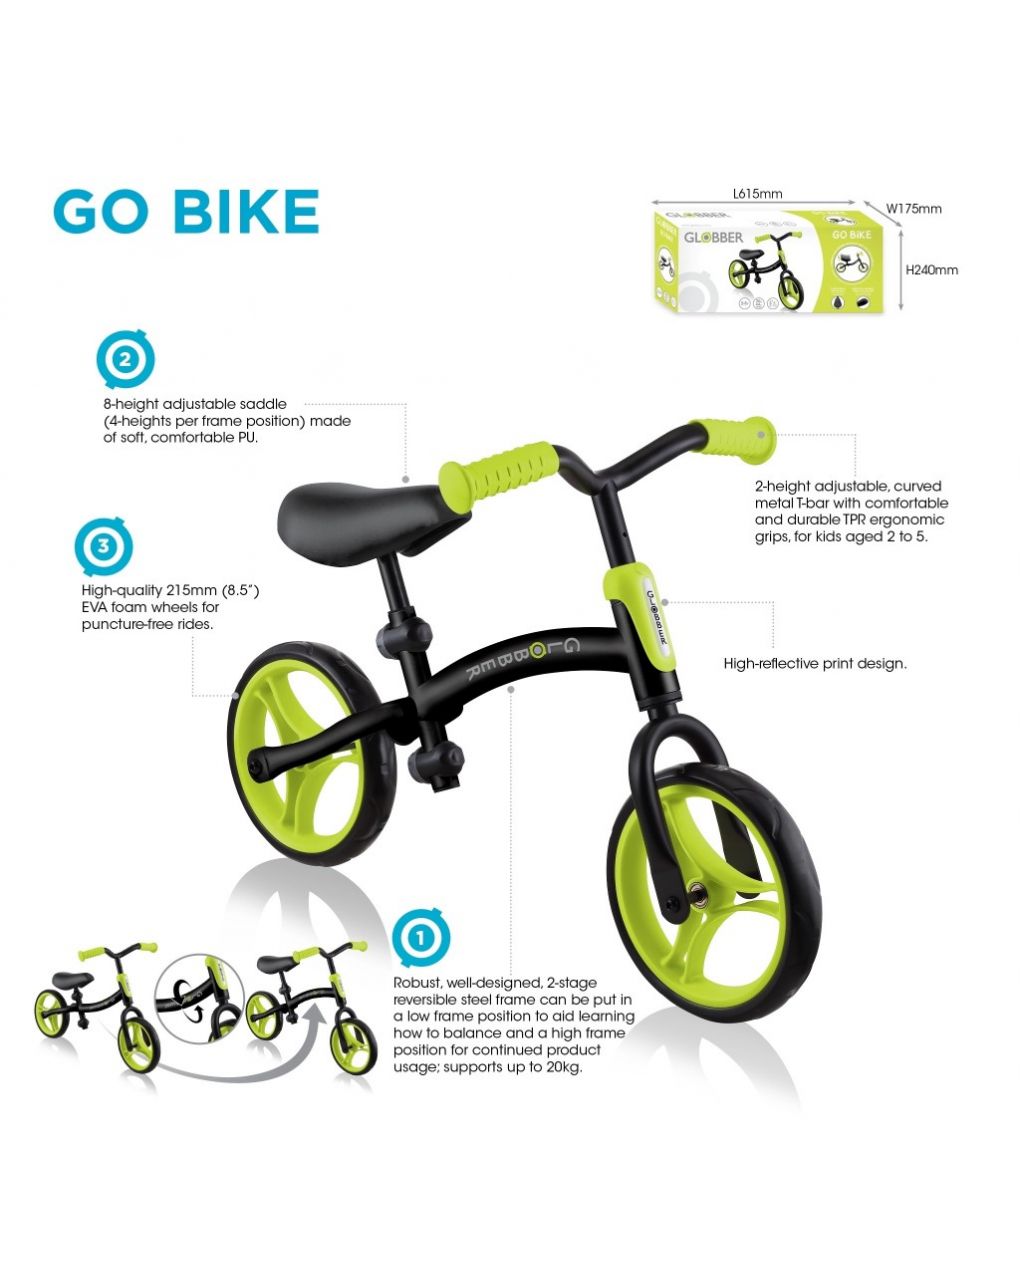 Go bike – black/lime green - globber - Globber